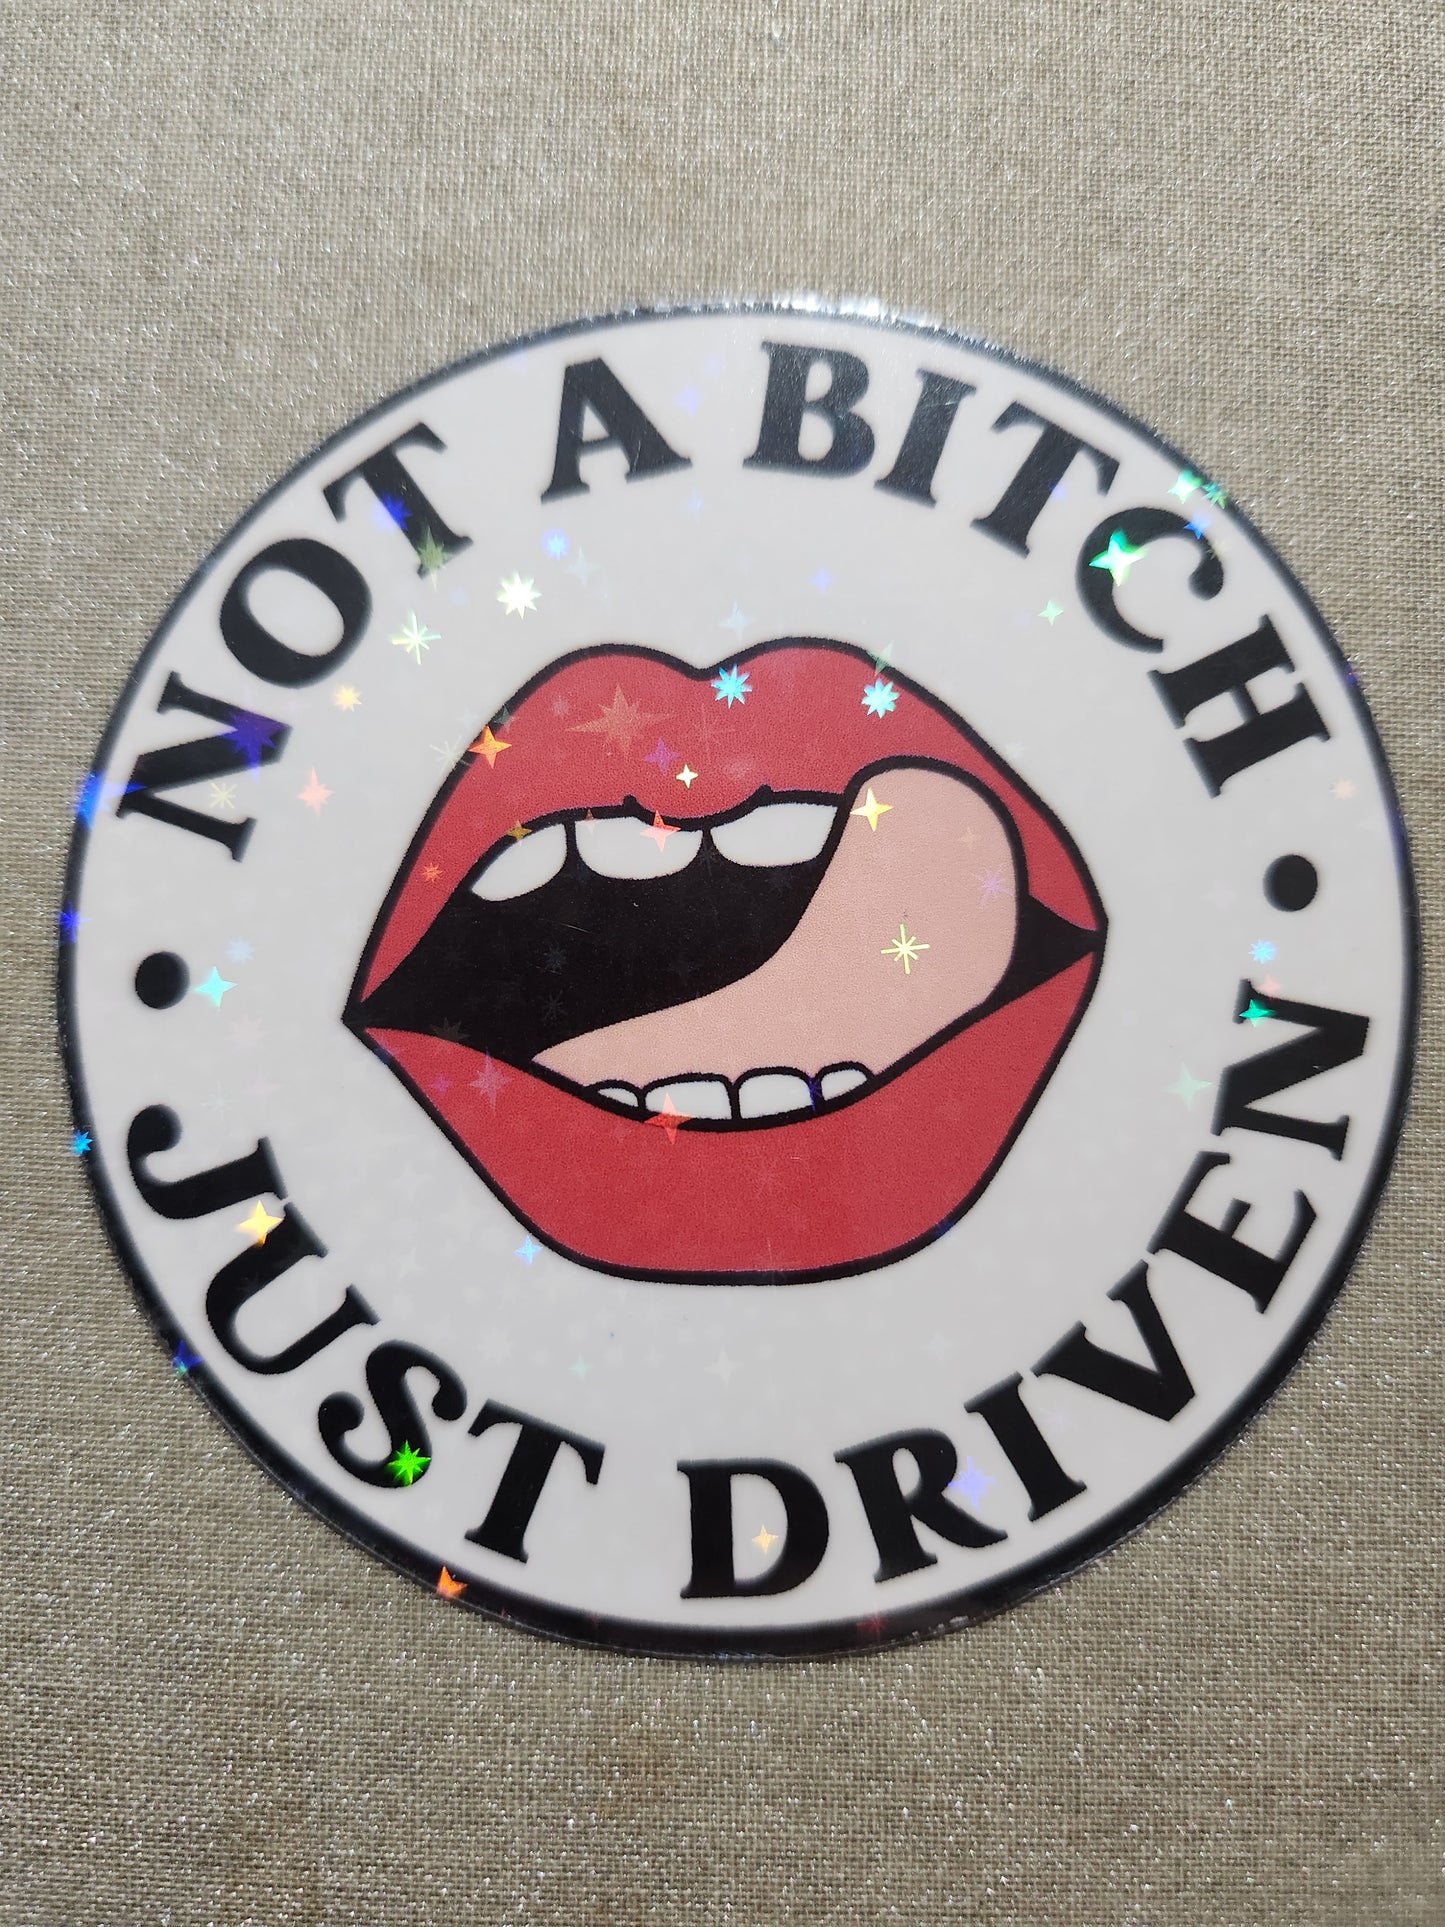 Not A Bitch, Just Driven Sticker